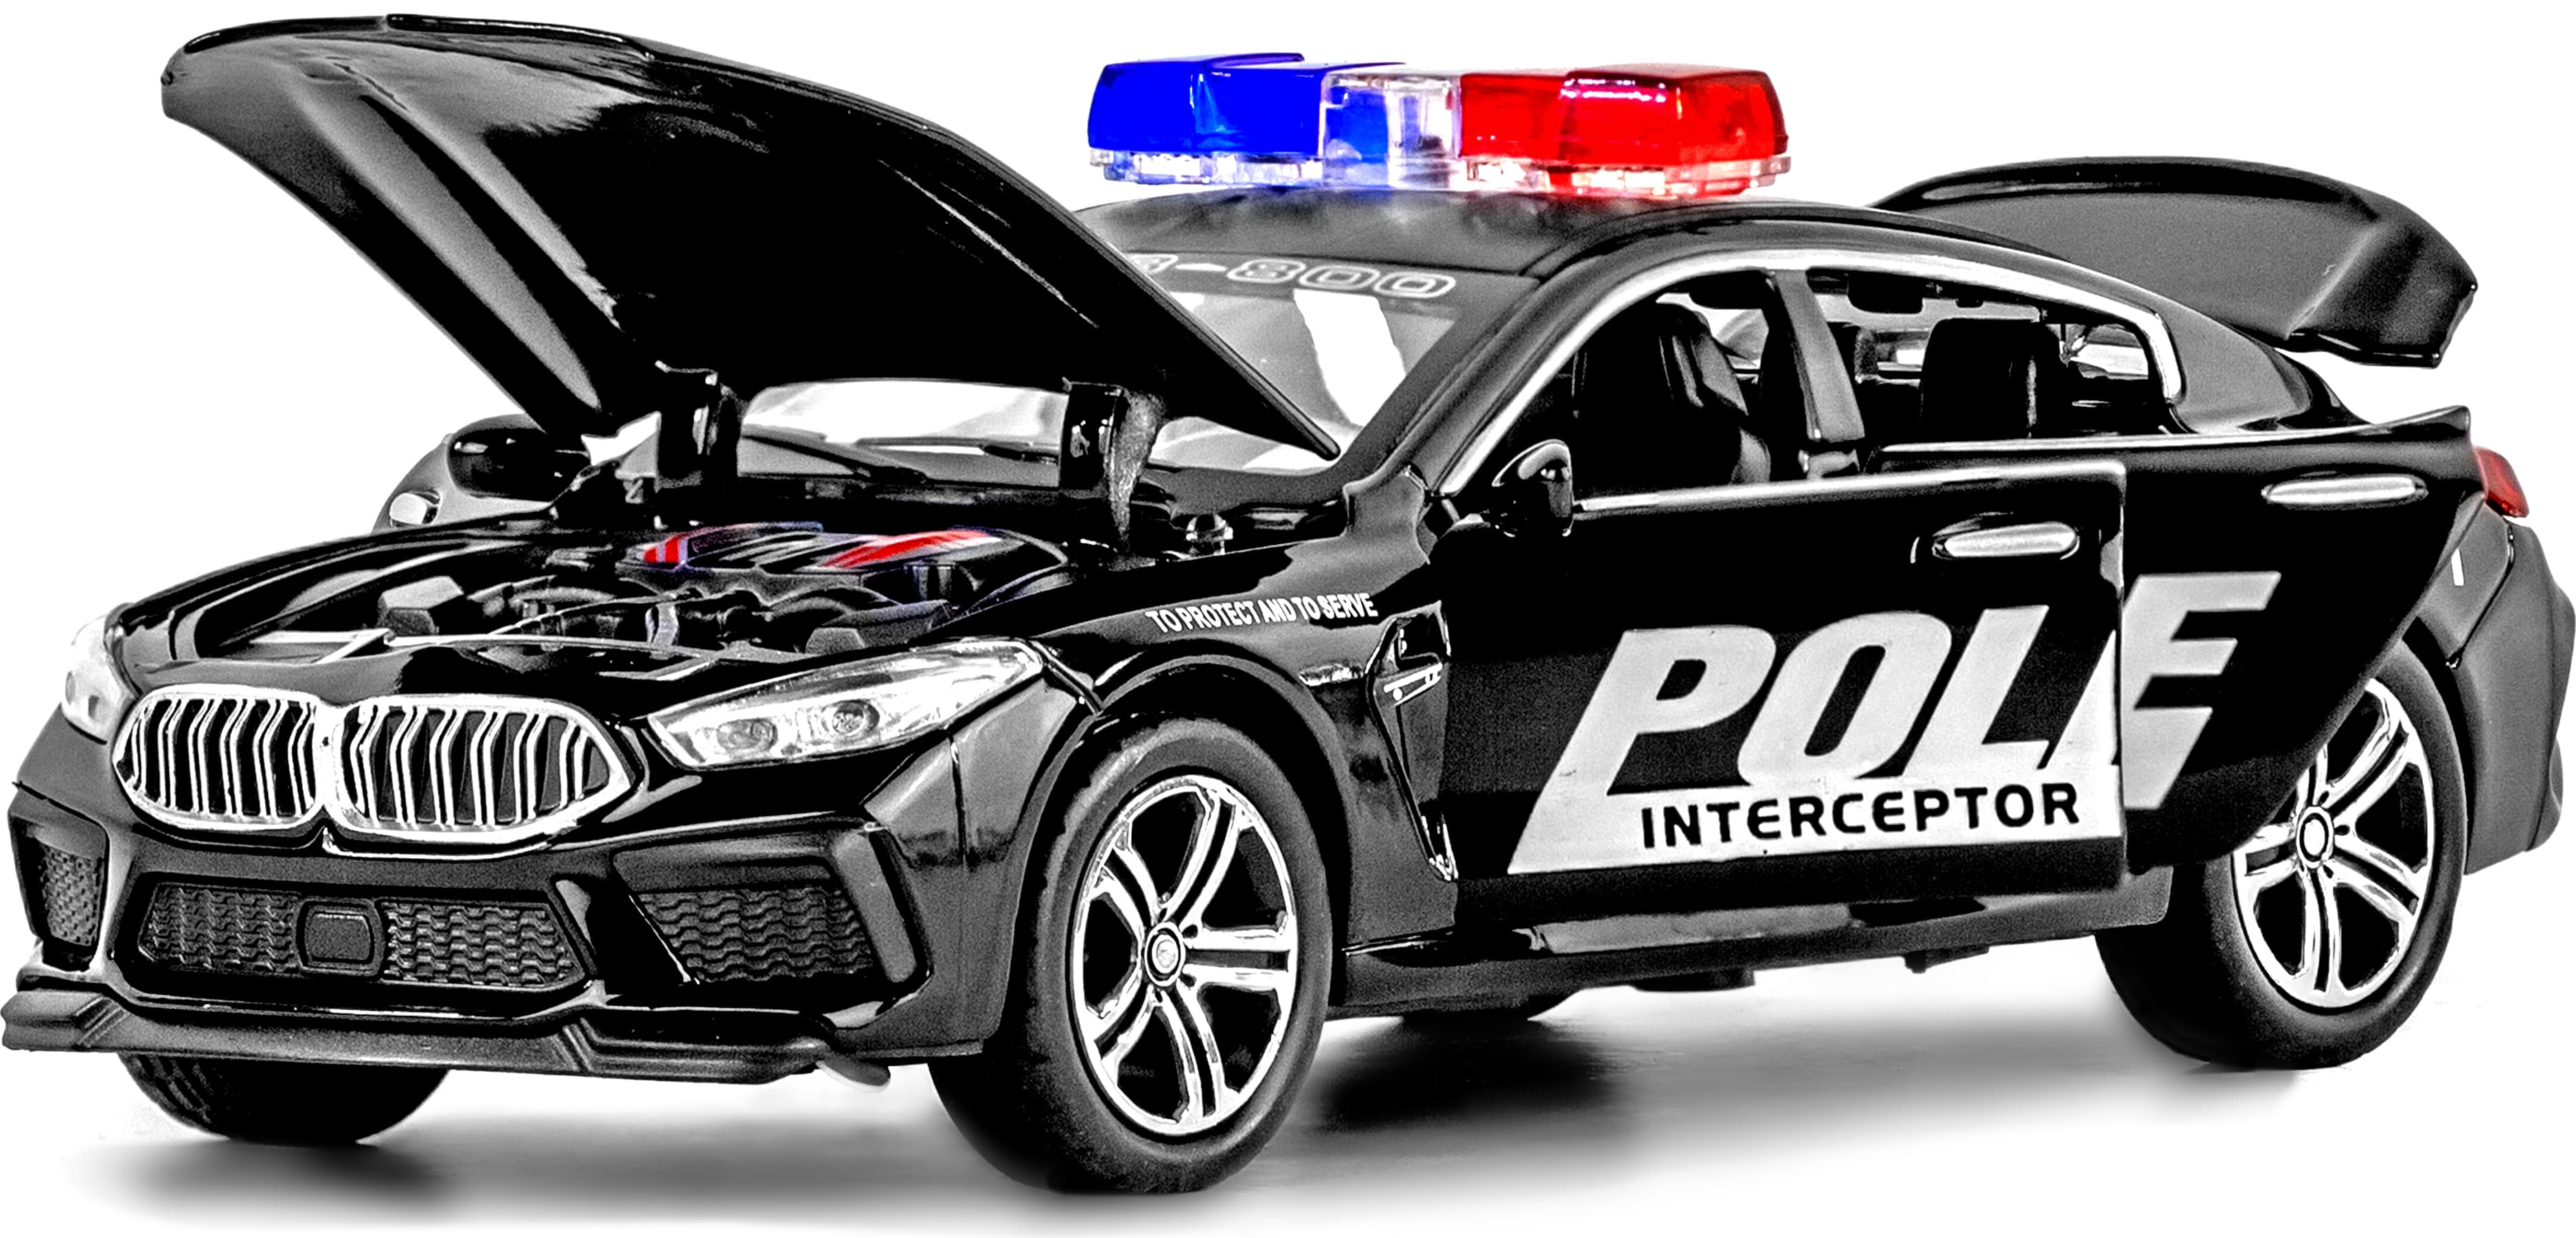 Машина металлическая ChiMei Model 1:32 «BMW M8: Полиция» 16 cм. CM318, инерционная, свет, звук / Микс